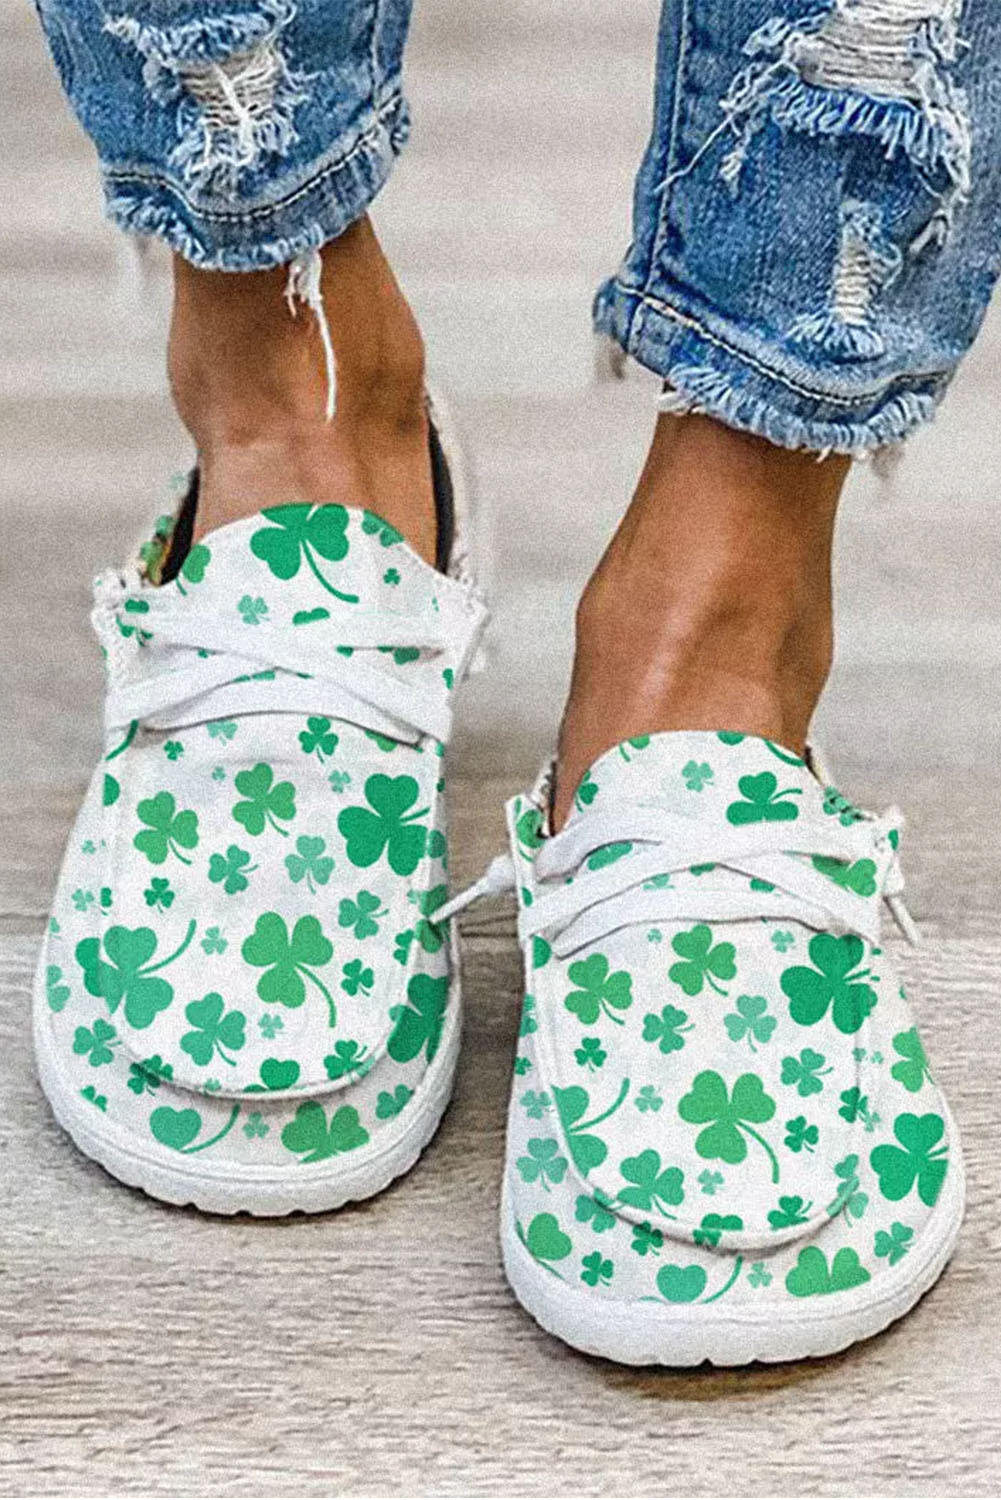 绿色 St. Patricks 三叶草印花帆布便鞋 BH022210